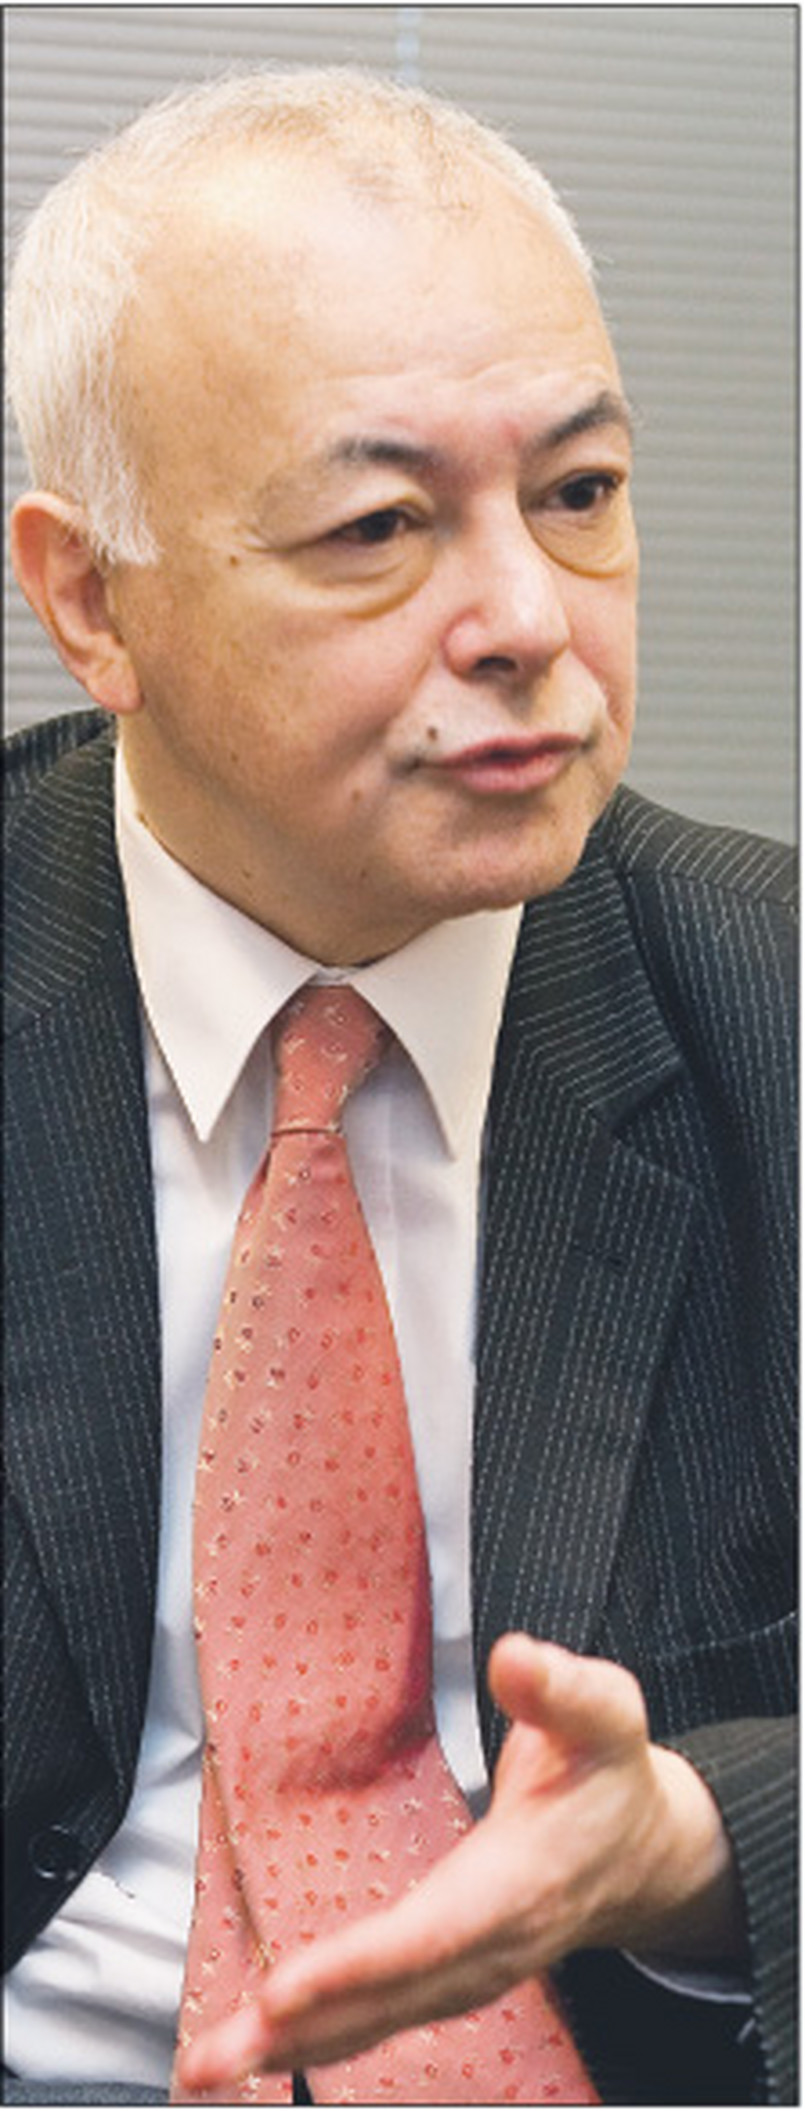 Prof. dr hab. Michał Kulesza to wybitny specjalista w dziedzinie prawa administracyjnego i niekwestionowany autorytet w środowiskach samorządowych